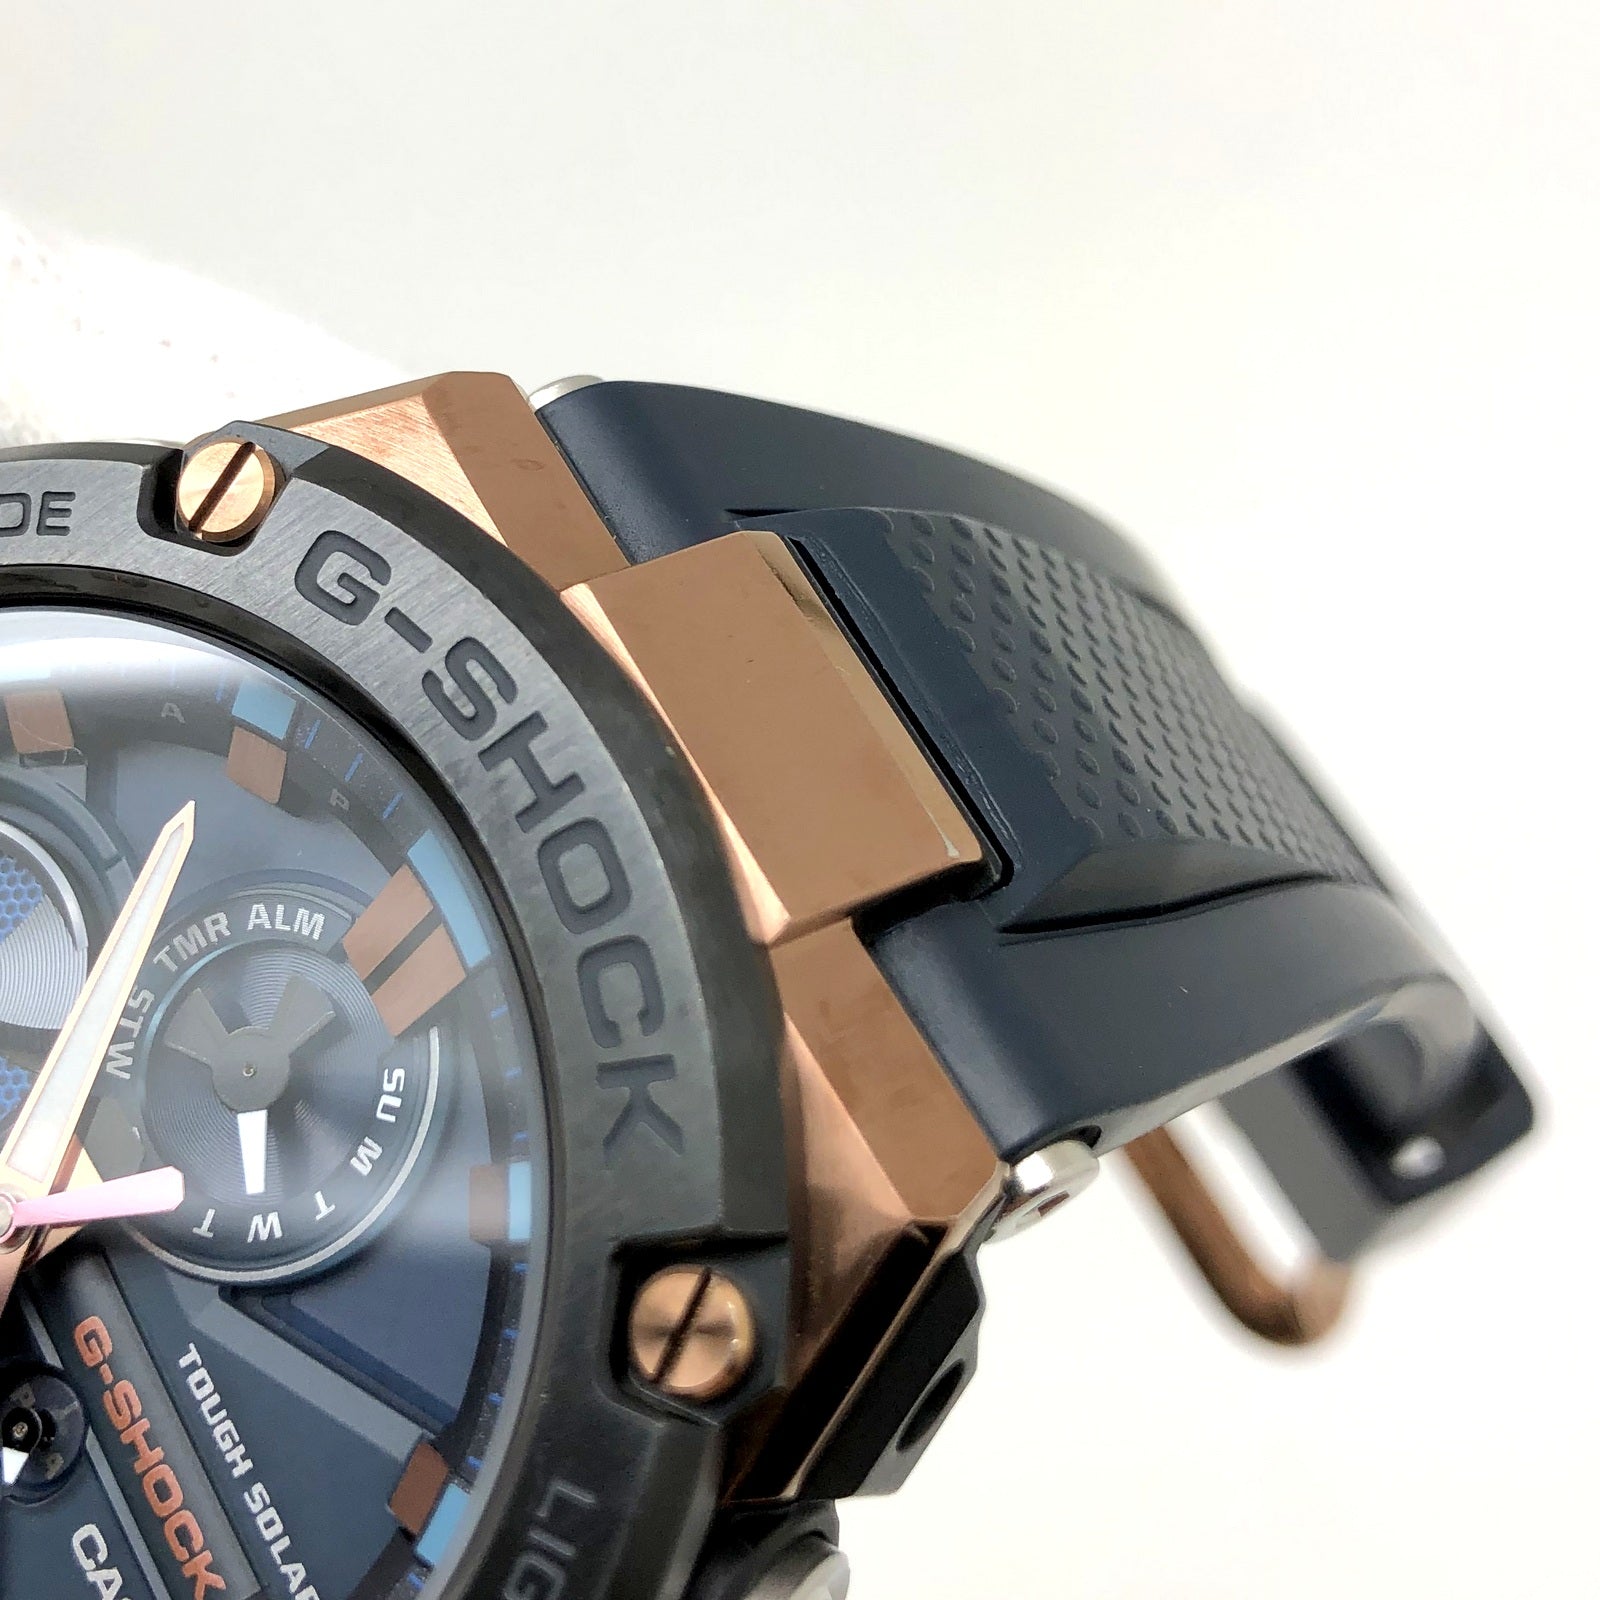 G-SHOCK ジーショック 腕時計 GST-B100G-2A動作確認済みです